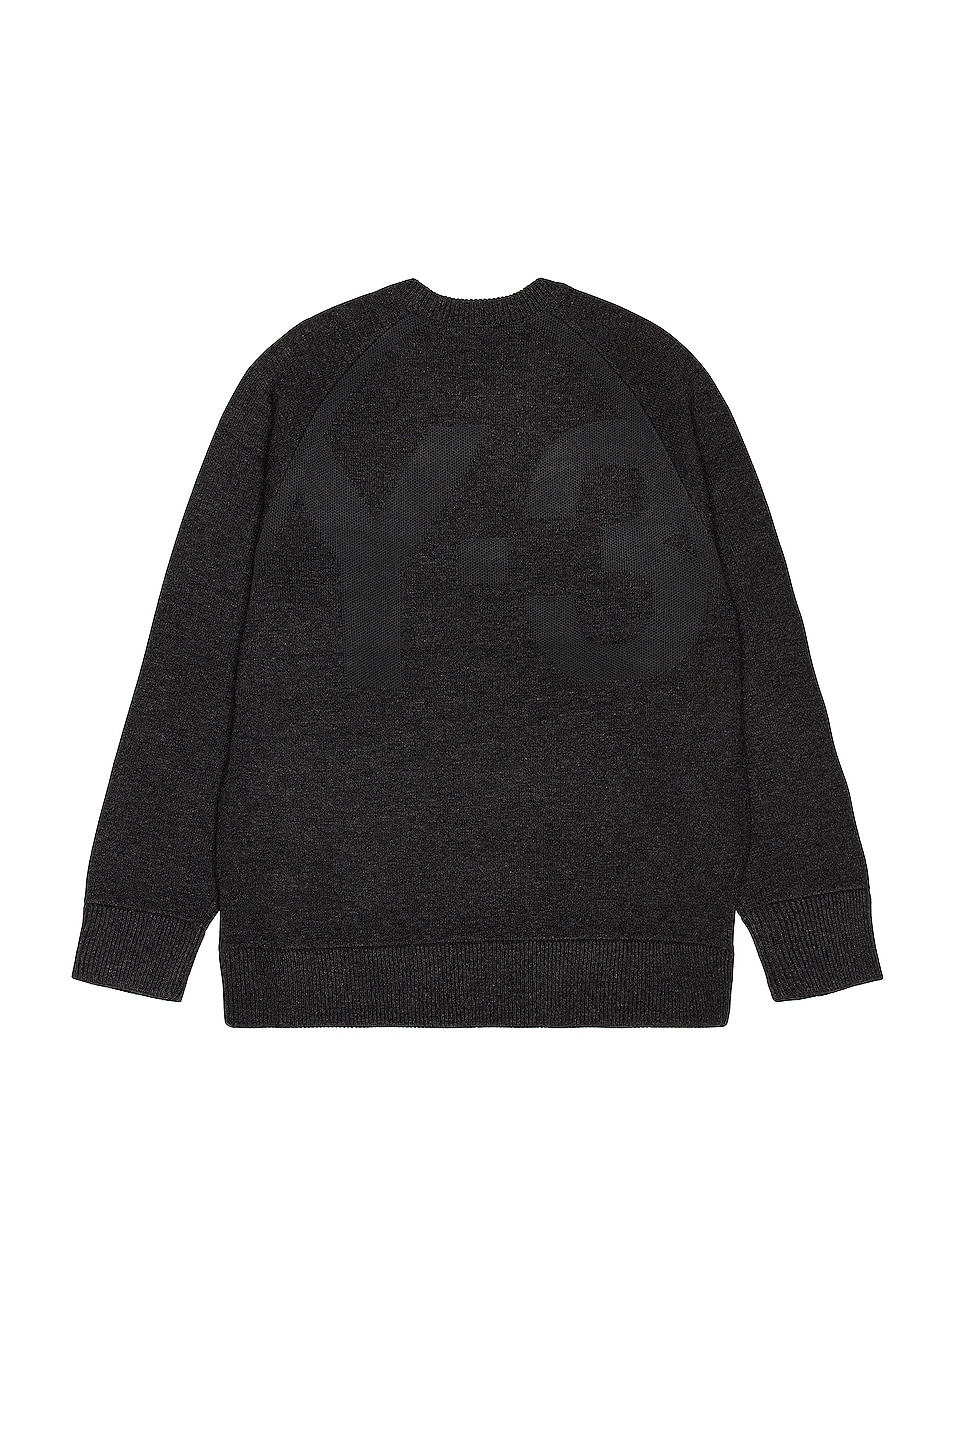 Image 1 of Y-3 Yohji Yamamoto Winter Knit Crew Sweater in Charcoal